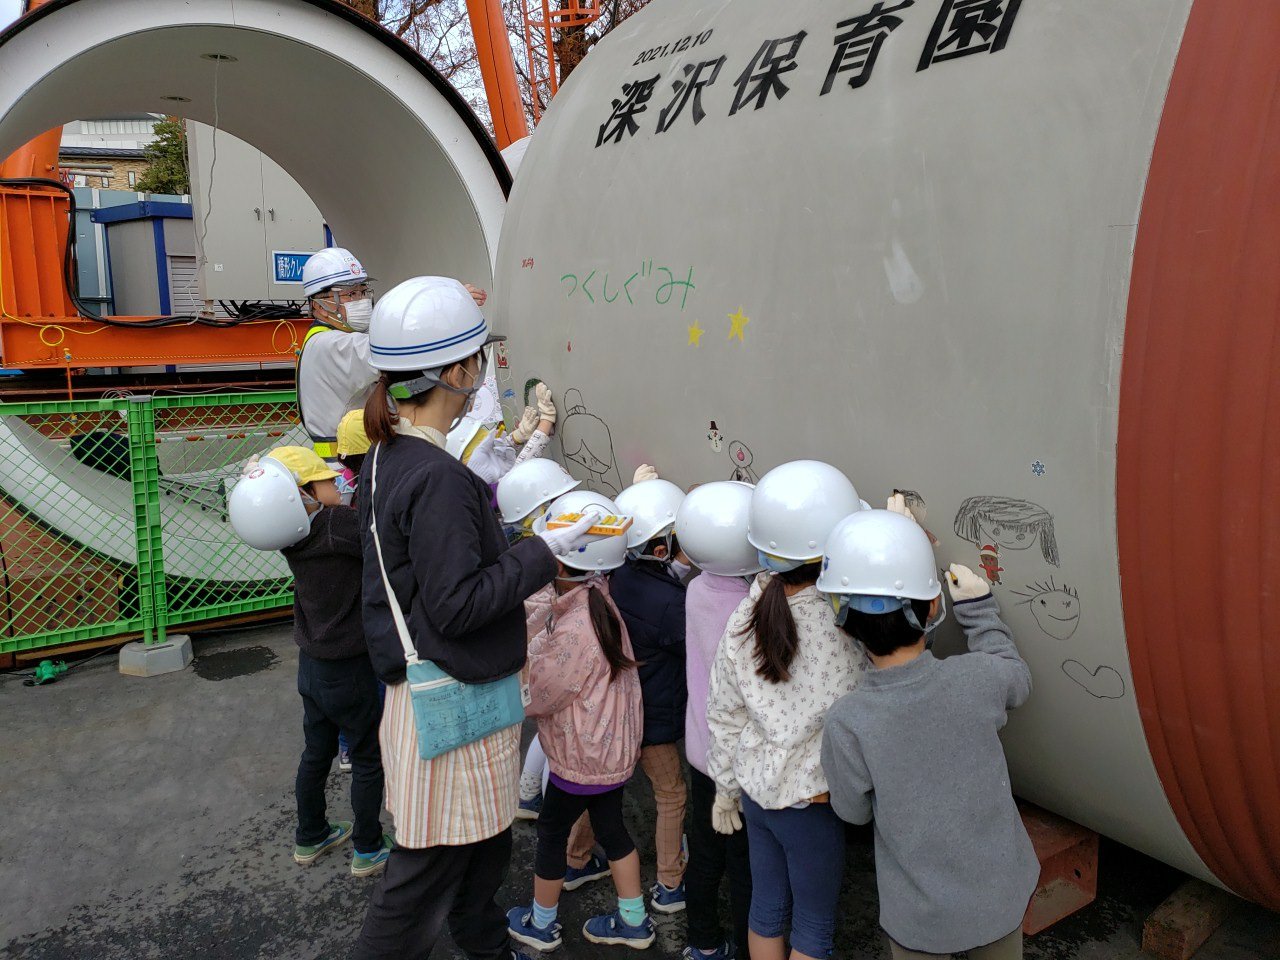 「呑川増強幹線その２工事」にて園児向けお絵描きイベント開催しました。